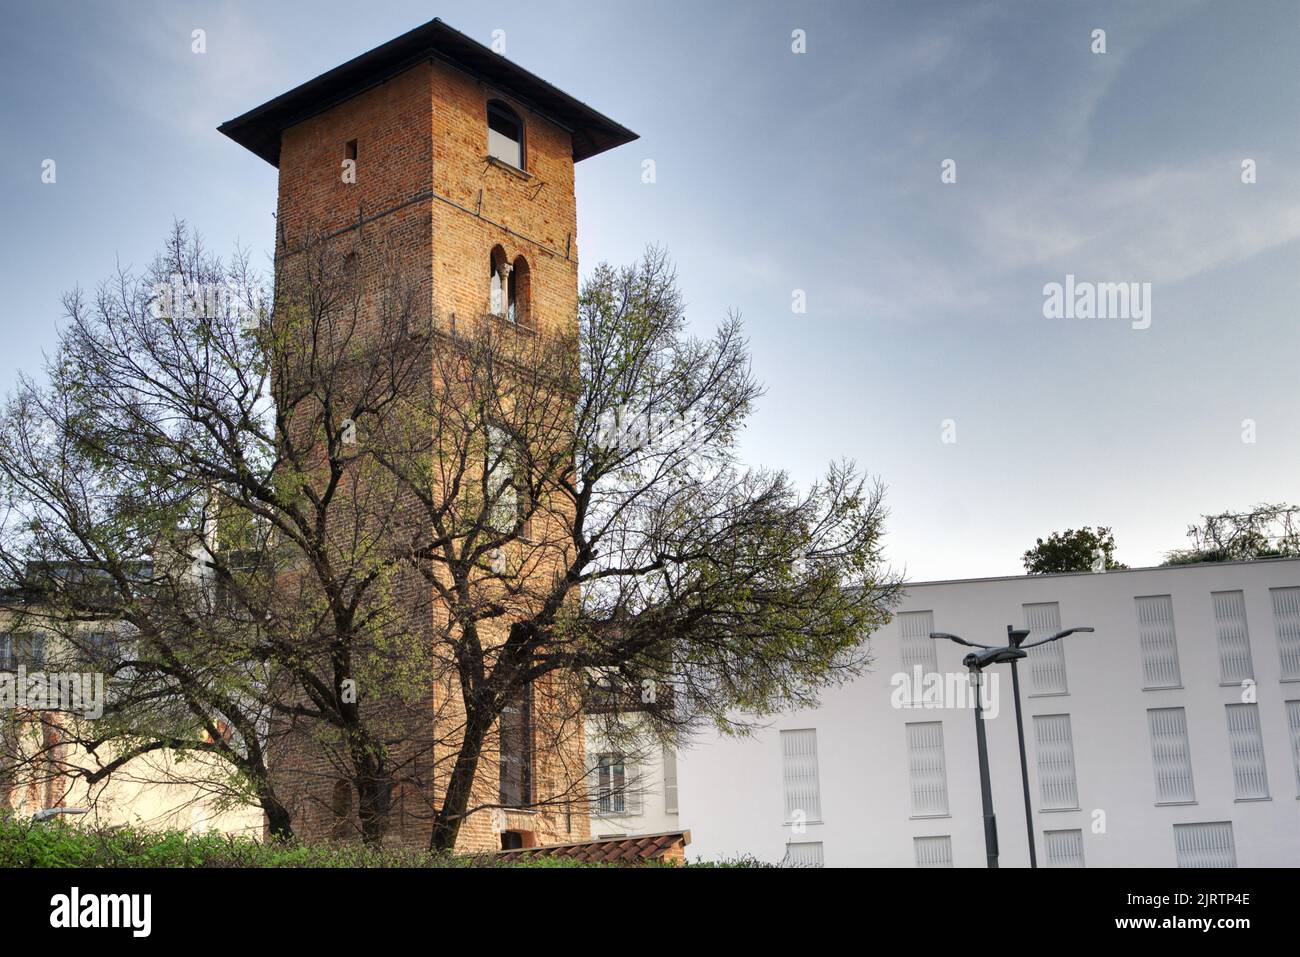 Old Milan - The Medieval Torre dei Gorani (Gorani's Tower), 11th century - Via Brisa, Milan Stock Photo